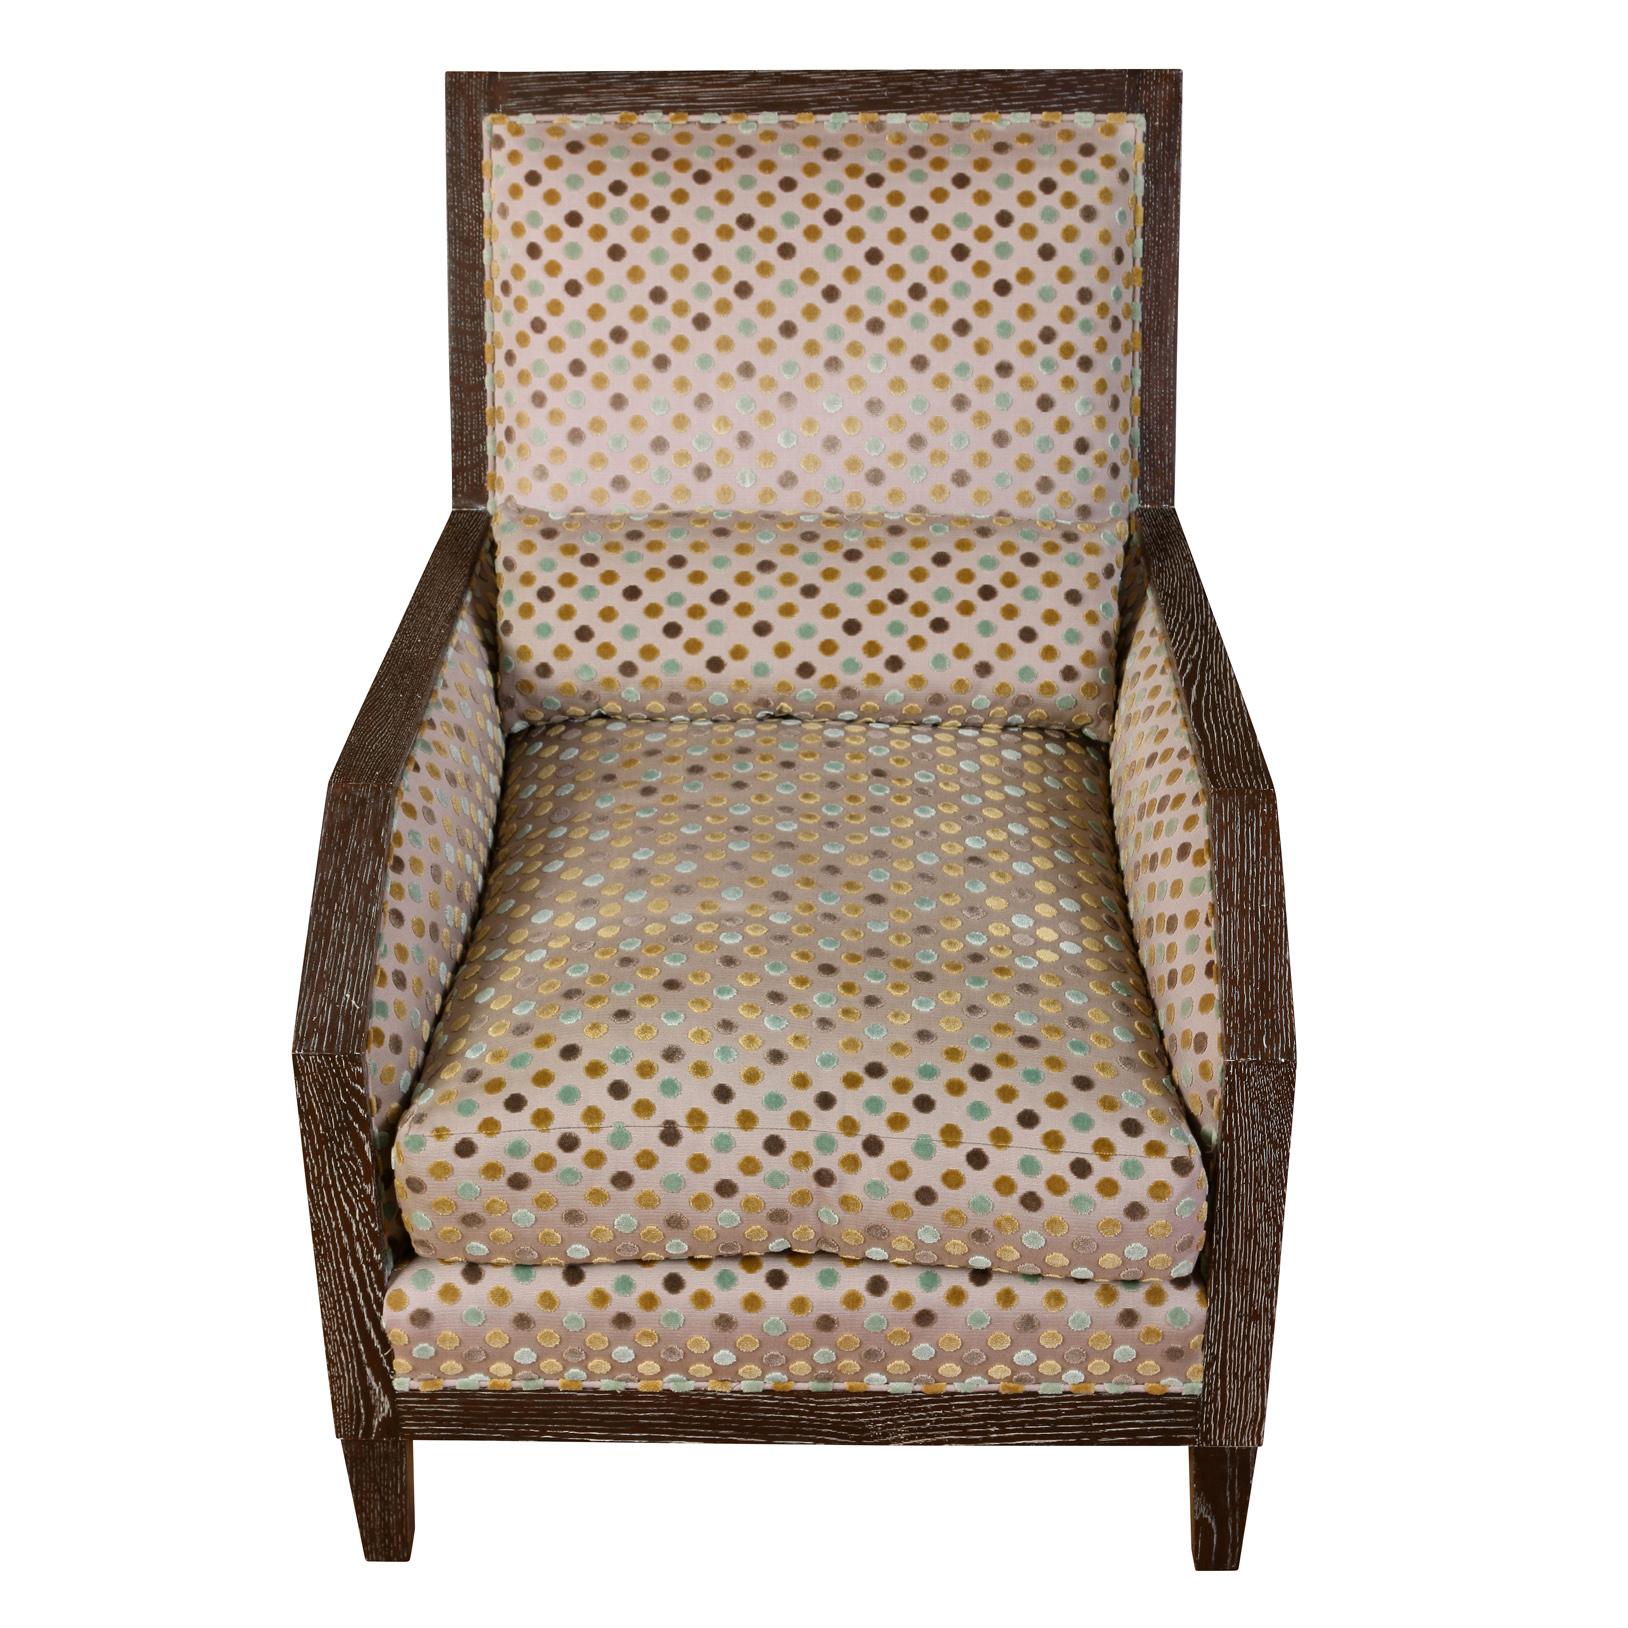 Paire de fauteuils modernes en chêne cérusé d'Anthony Lawrence Belfair, tapissés de velours coupé à pois marron, or et céladon, avec des bras angulaires et un dossier droit.